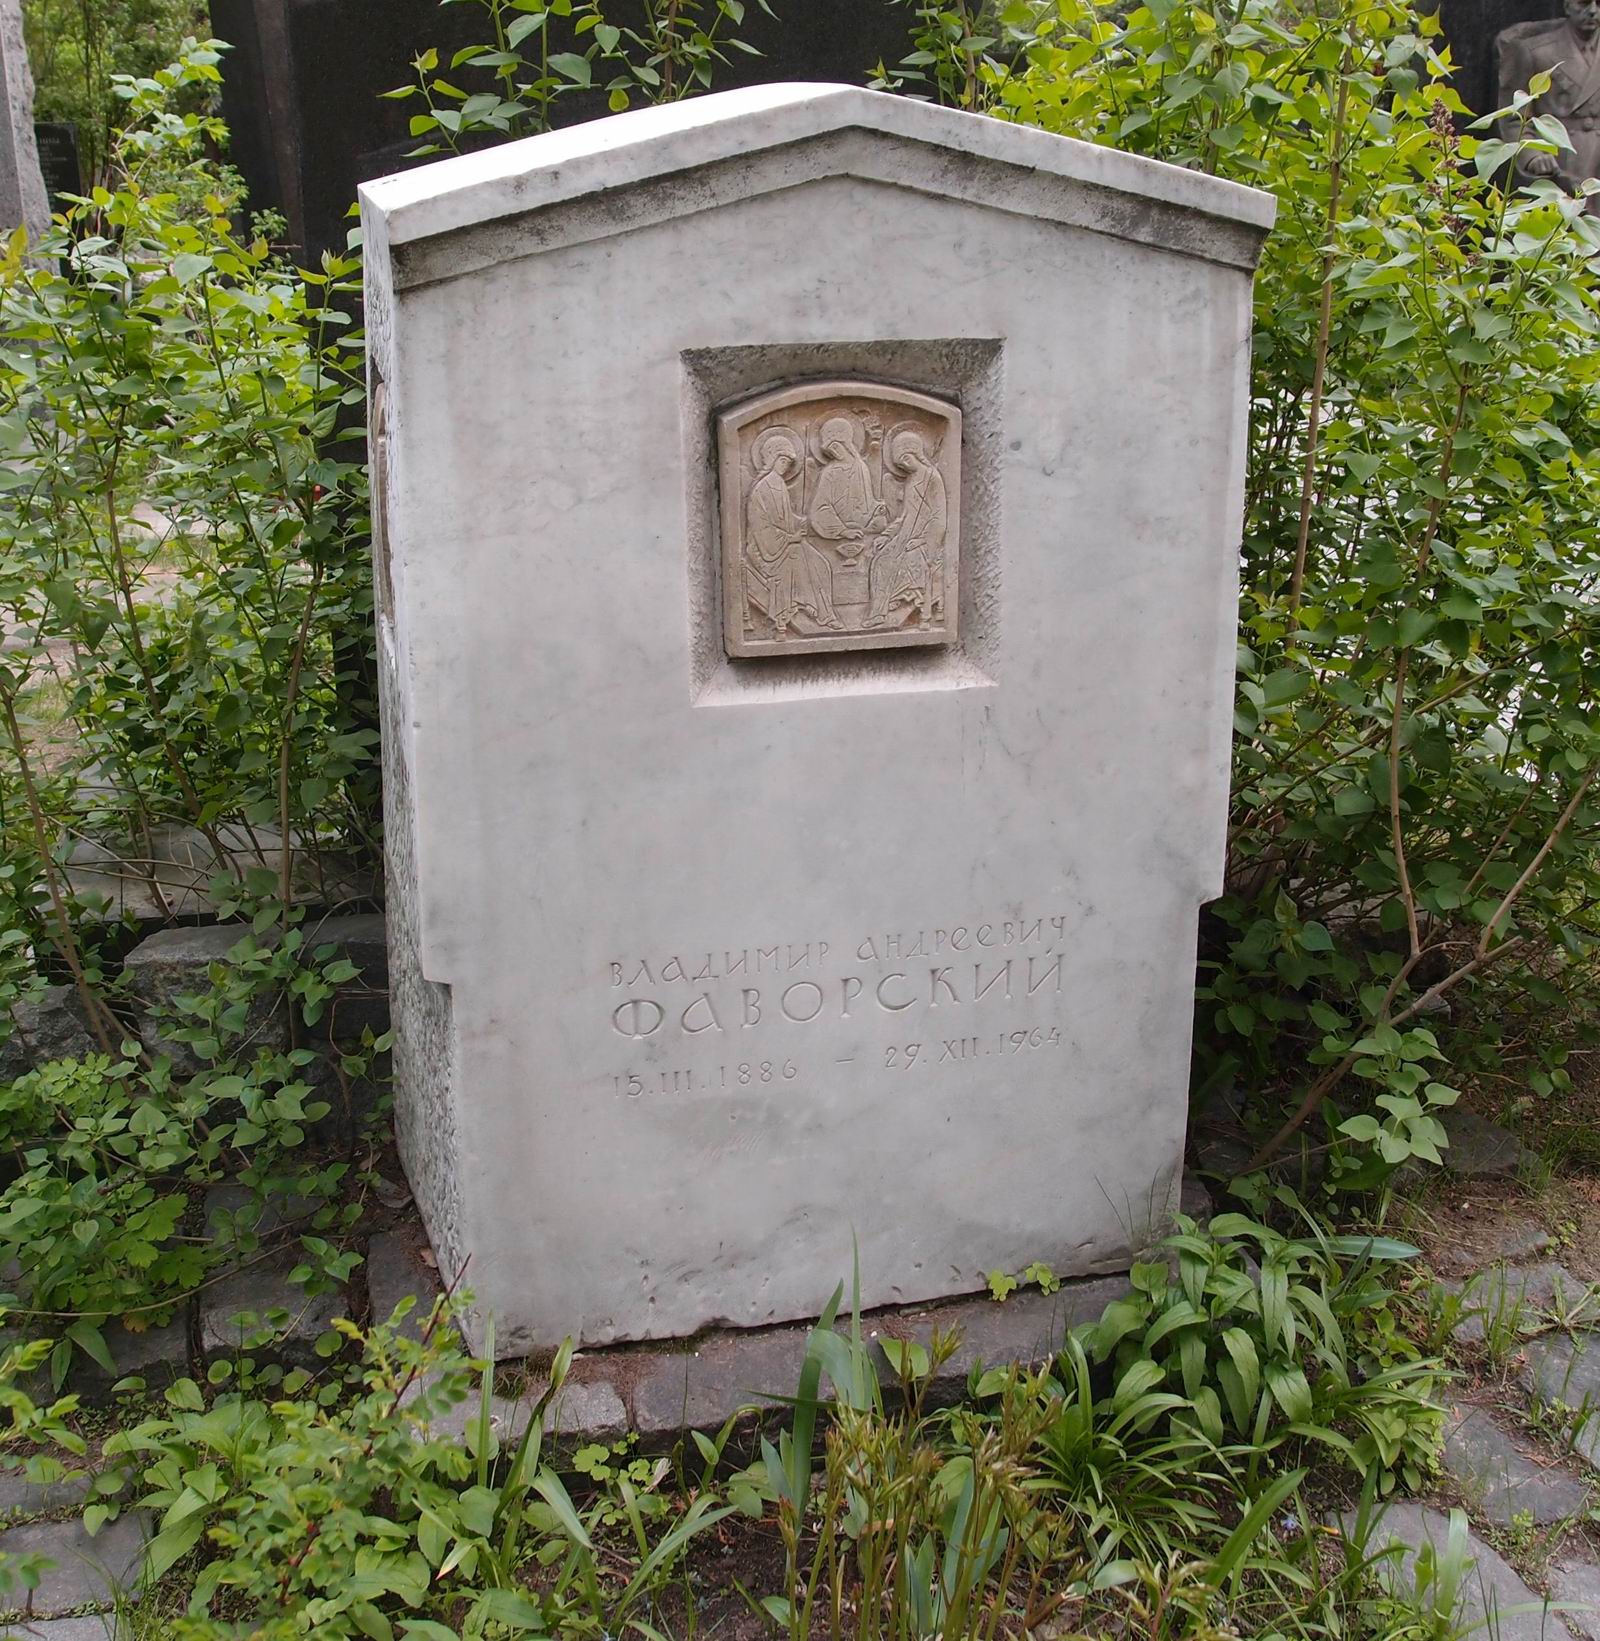 Памятник на могиле Фаворского В.А. (1886-1964), ск. Д.Шаховской, на Новодевичьем кладбище (6-14-12). Нажмите левую кнопку мыши, чтобы увидеть фрагменты памятника.